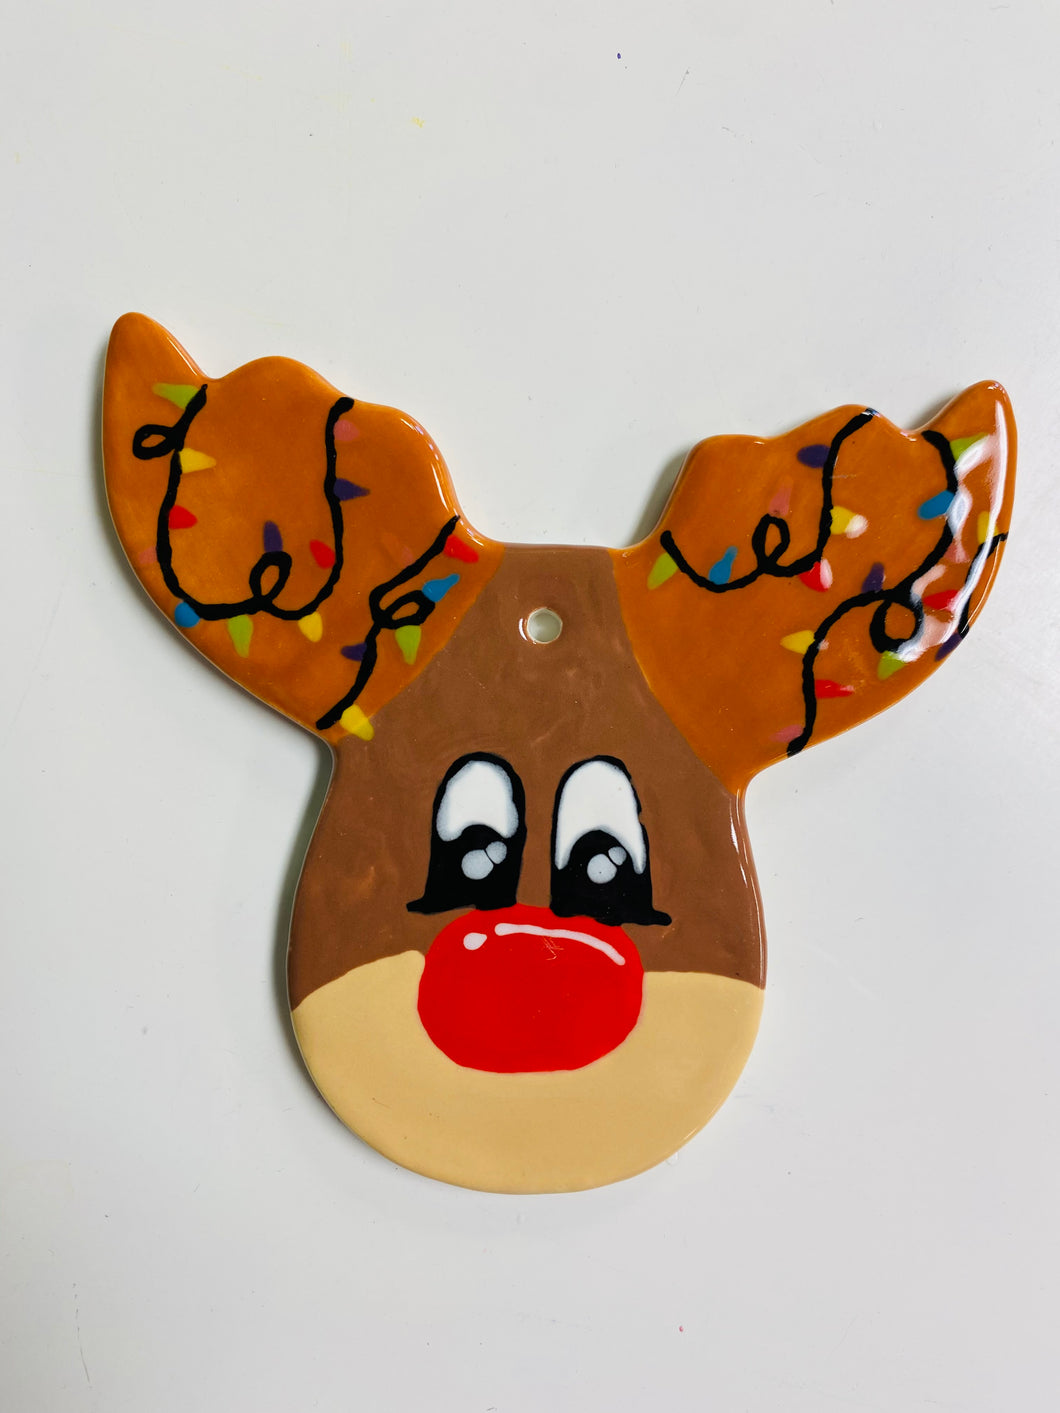 Reindeer Head Ornament